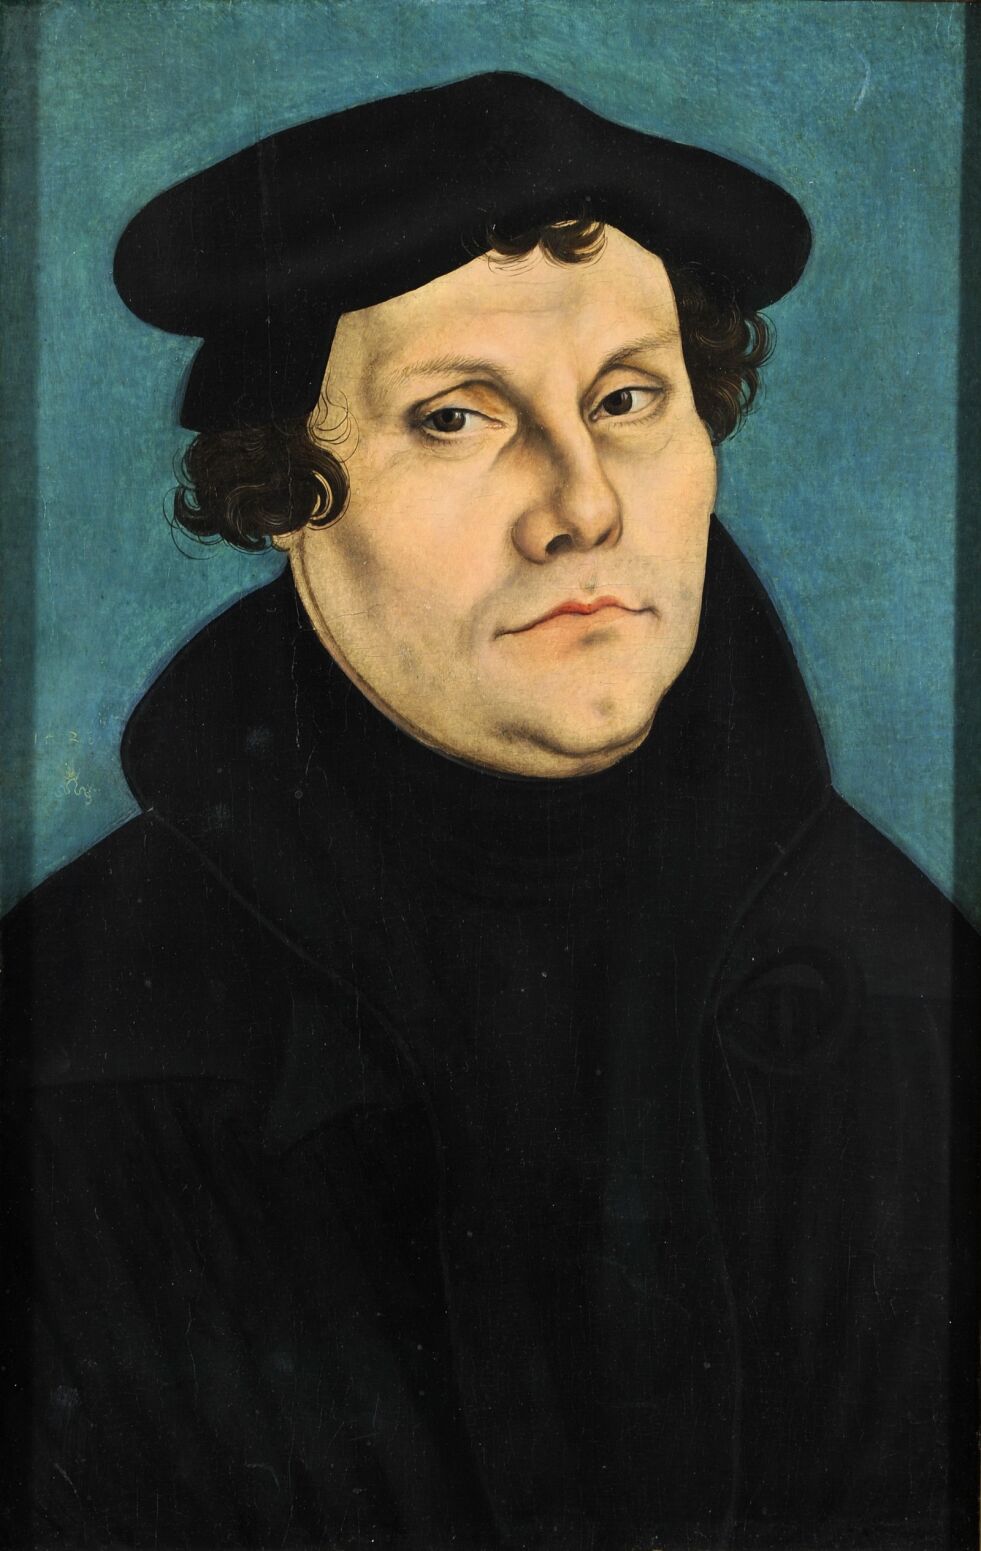 Martin Luther: I boken «Om jødene og deres løgner», gav Luther uttrykk for antisemittiske holdninger. – Dette må vi ta et oppgjør med i jubileumsåret for reformasjonen, mener Trine Overå Hansen.